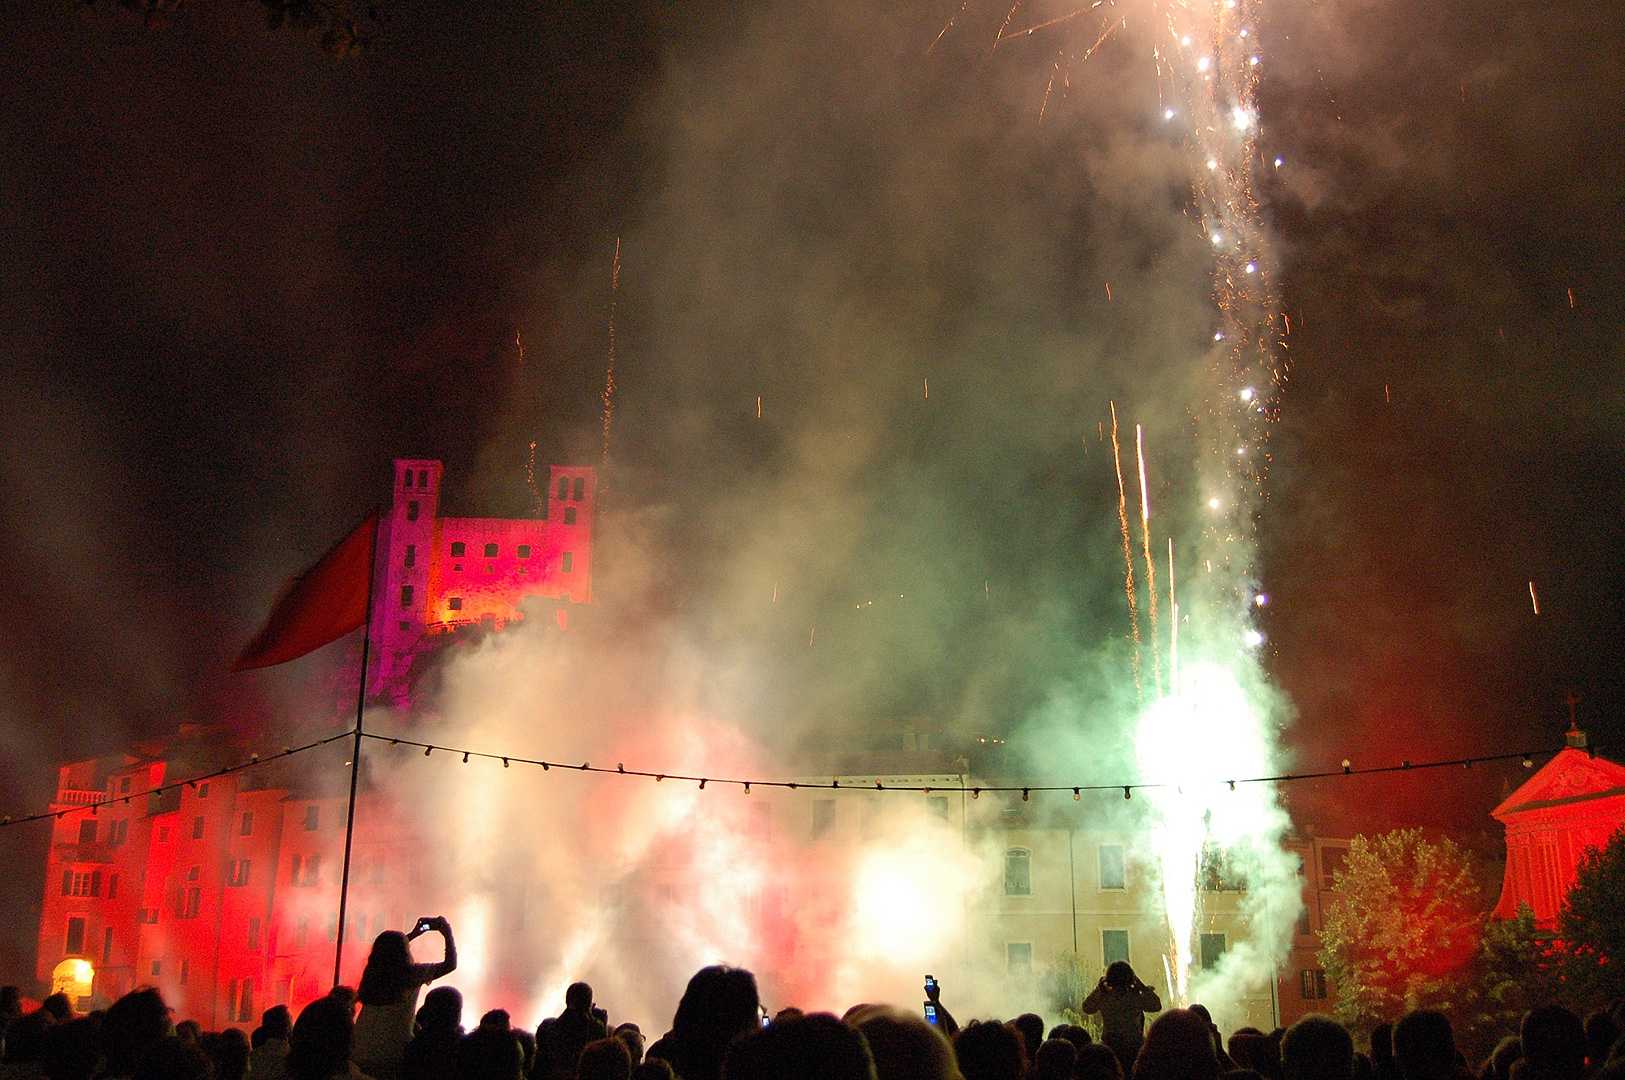 Vuurwerk in Dolceacqua (IM, Ligurië, Italië); Fireworks in Dolceacqua (IM, Liguria, Italy)